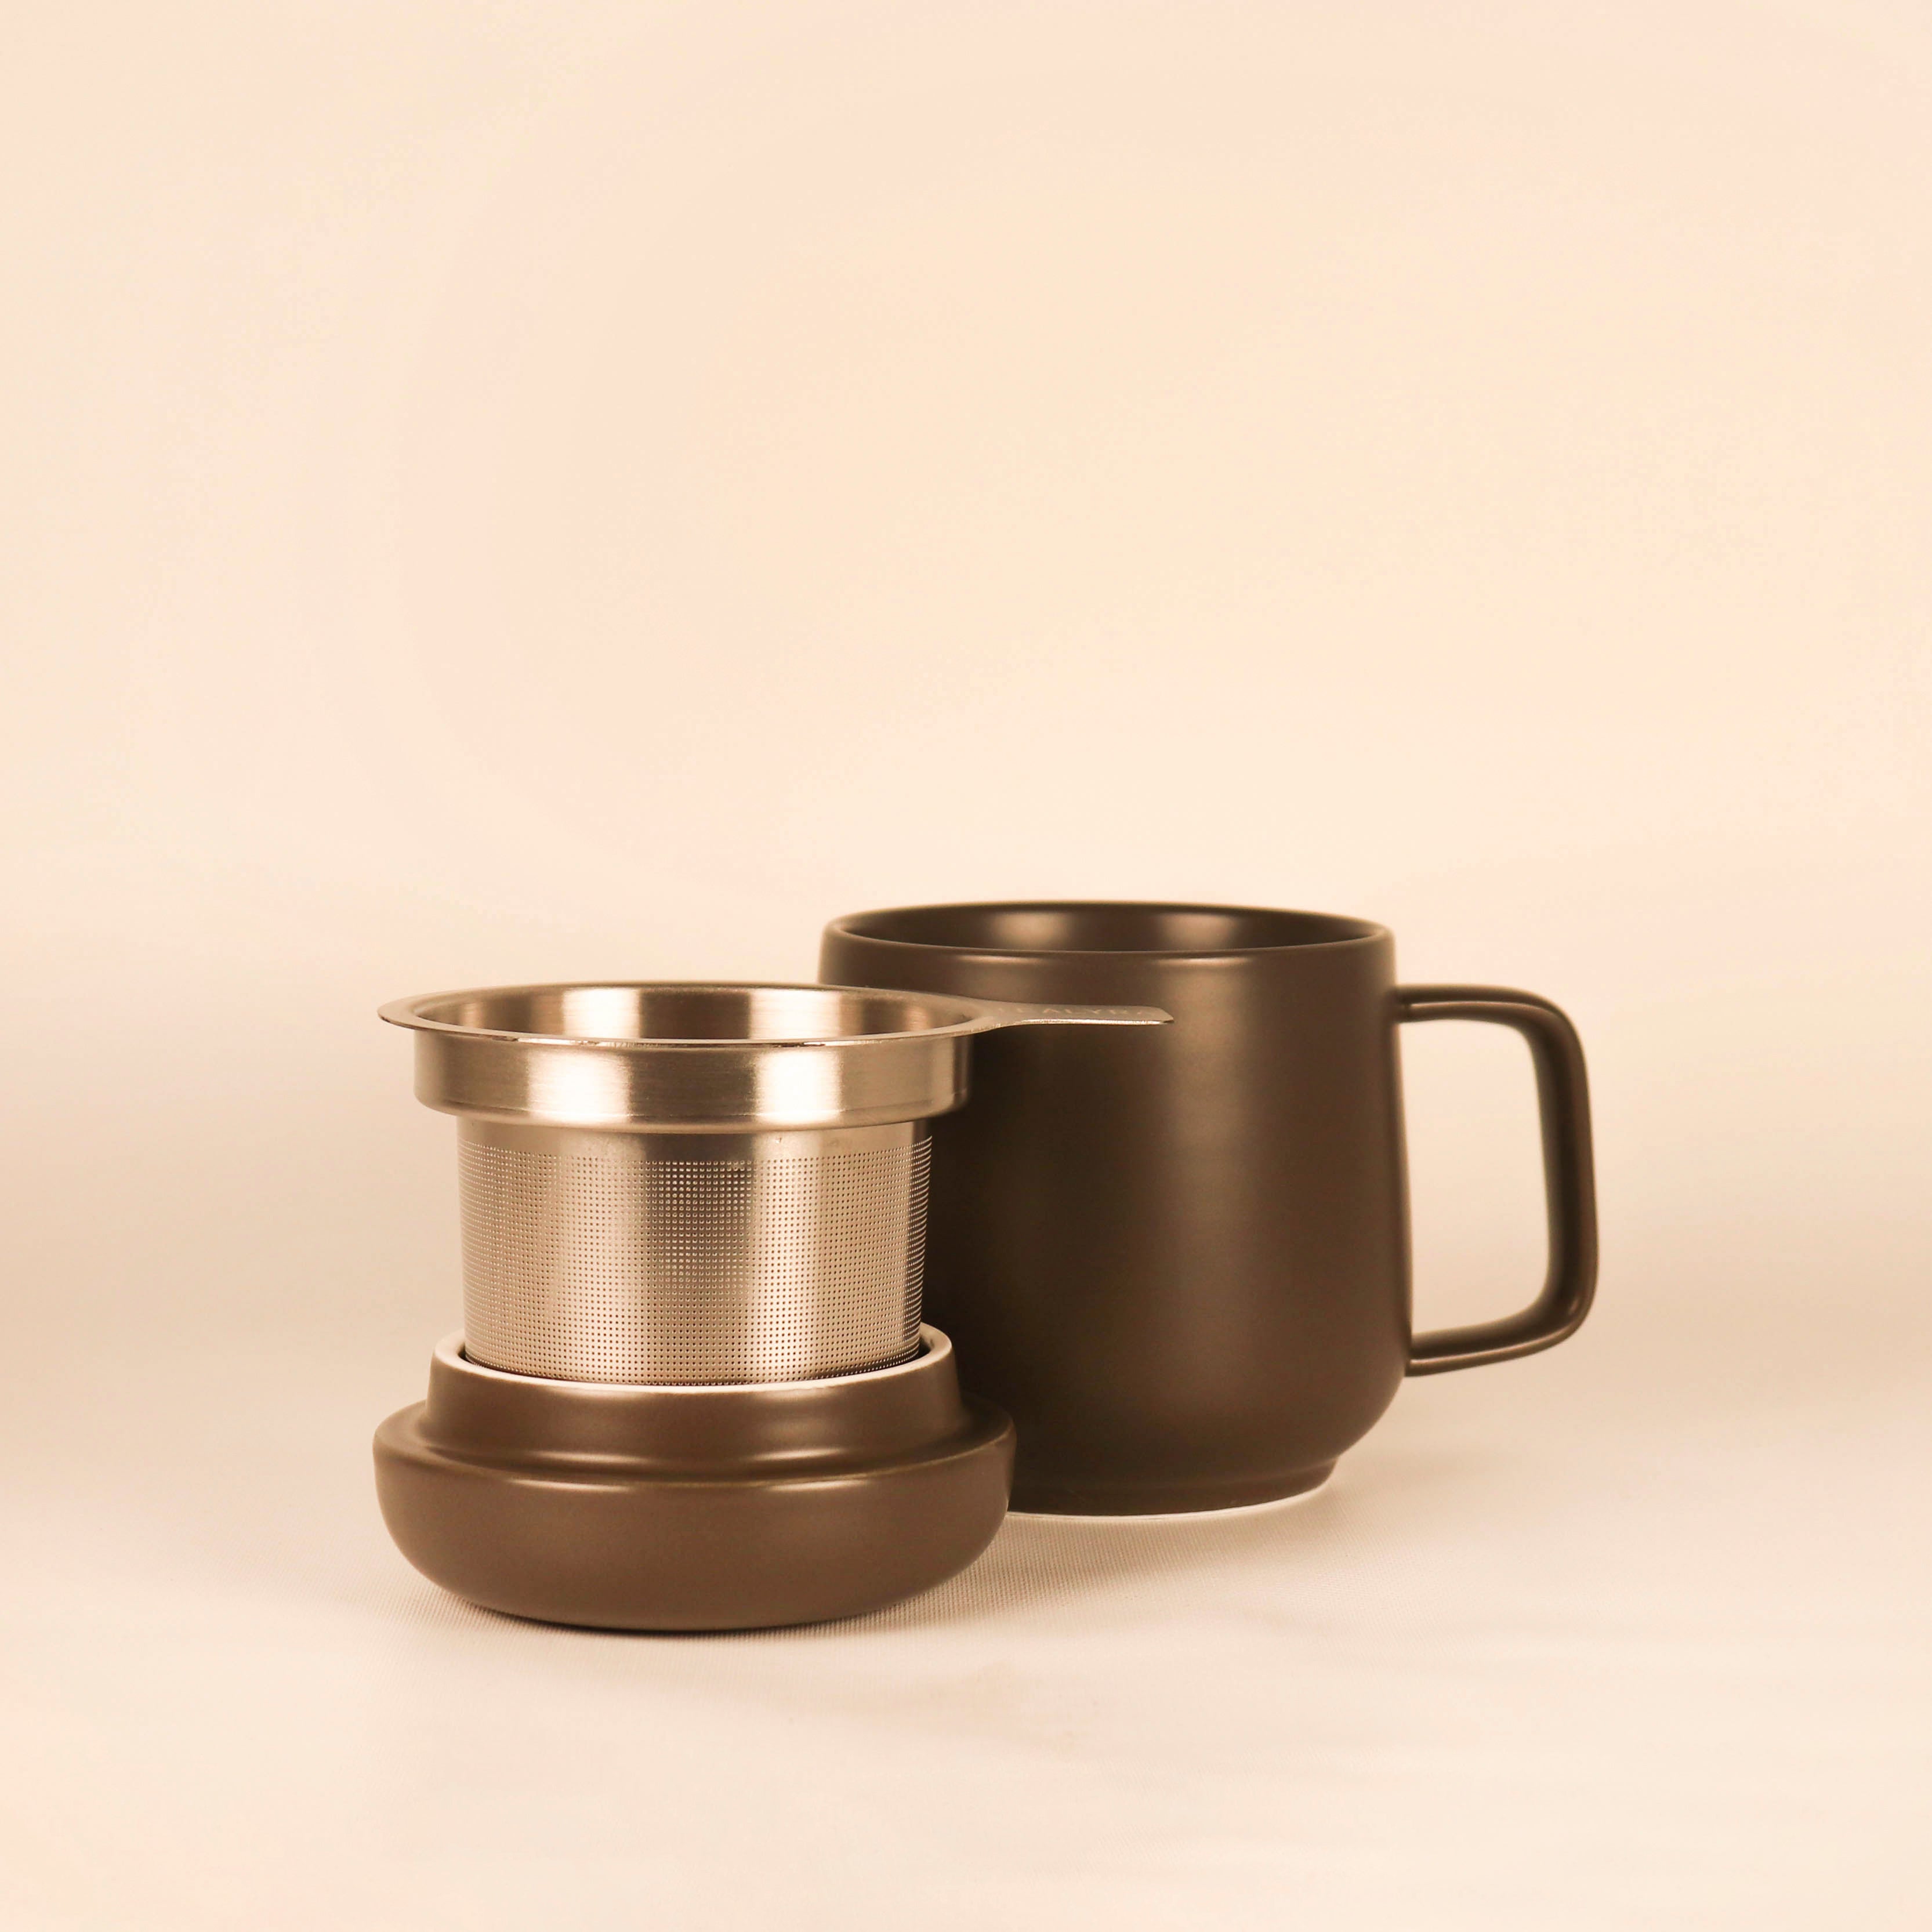 SUMO Ceramic Mug with Infuser